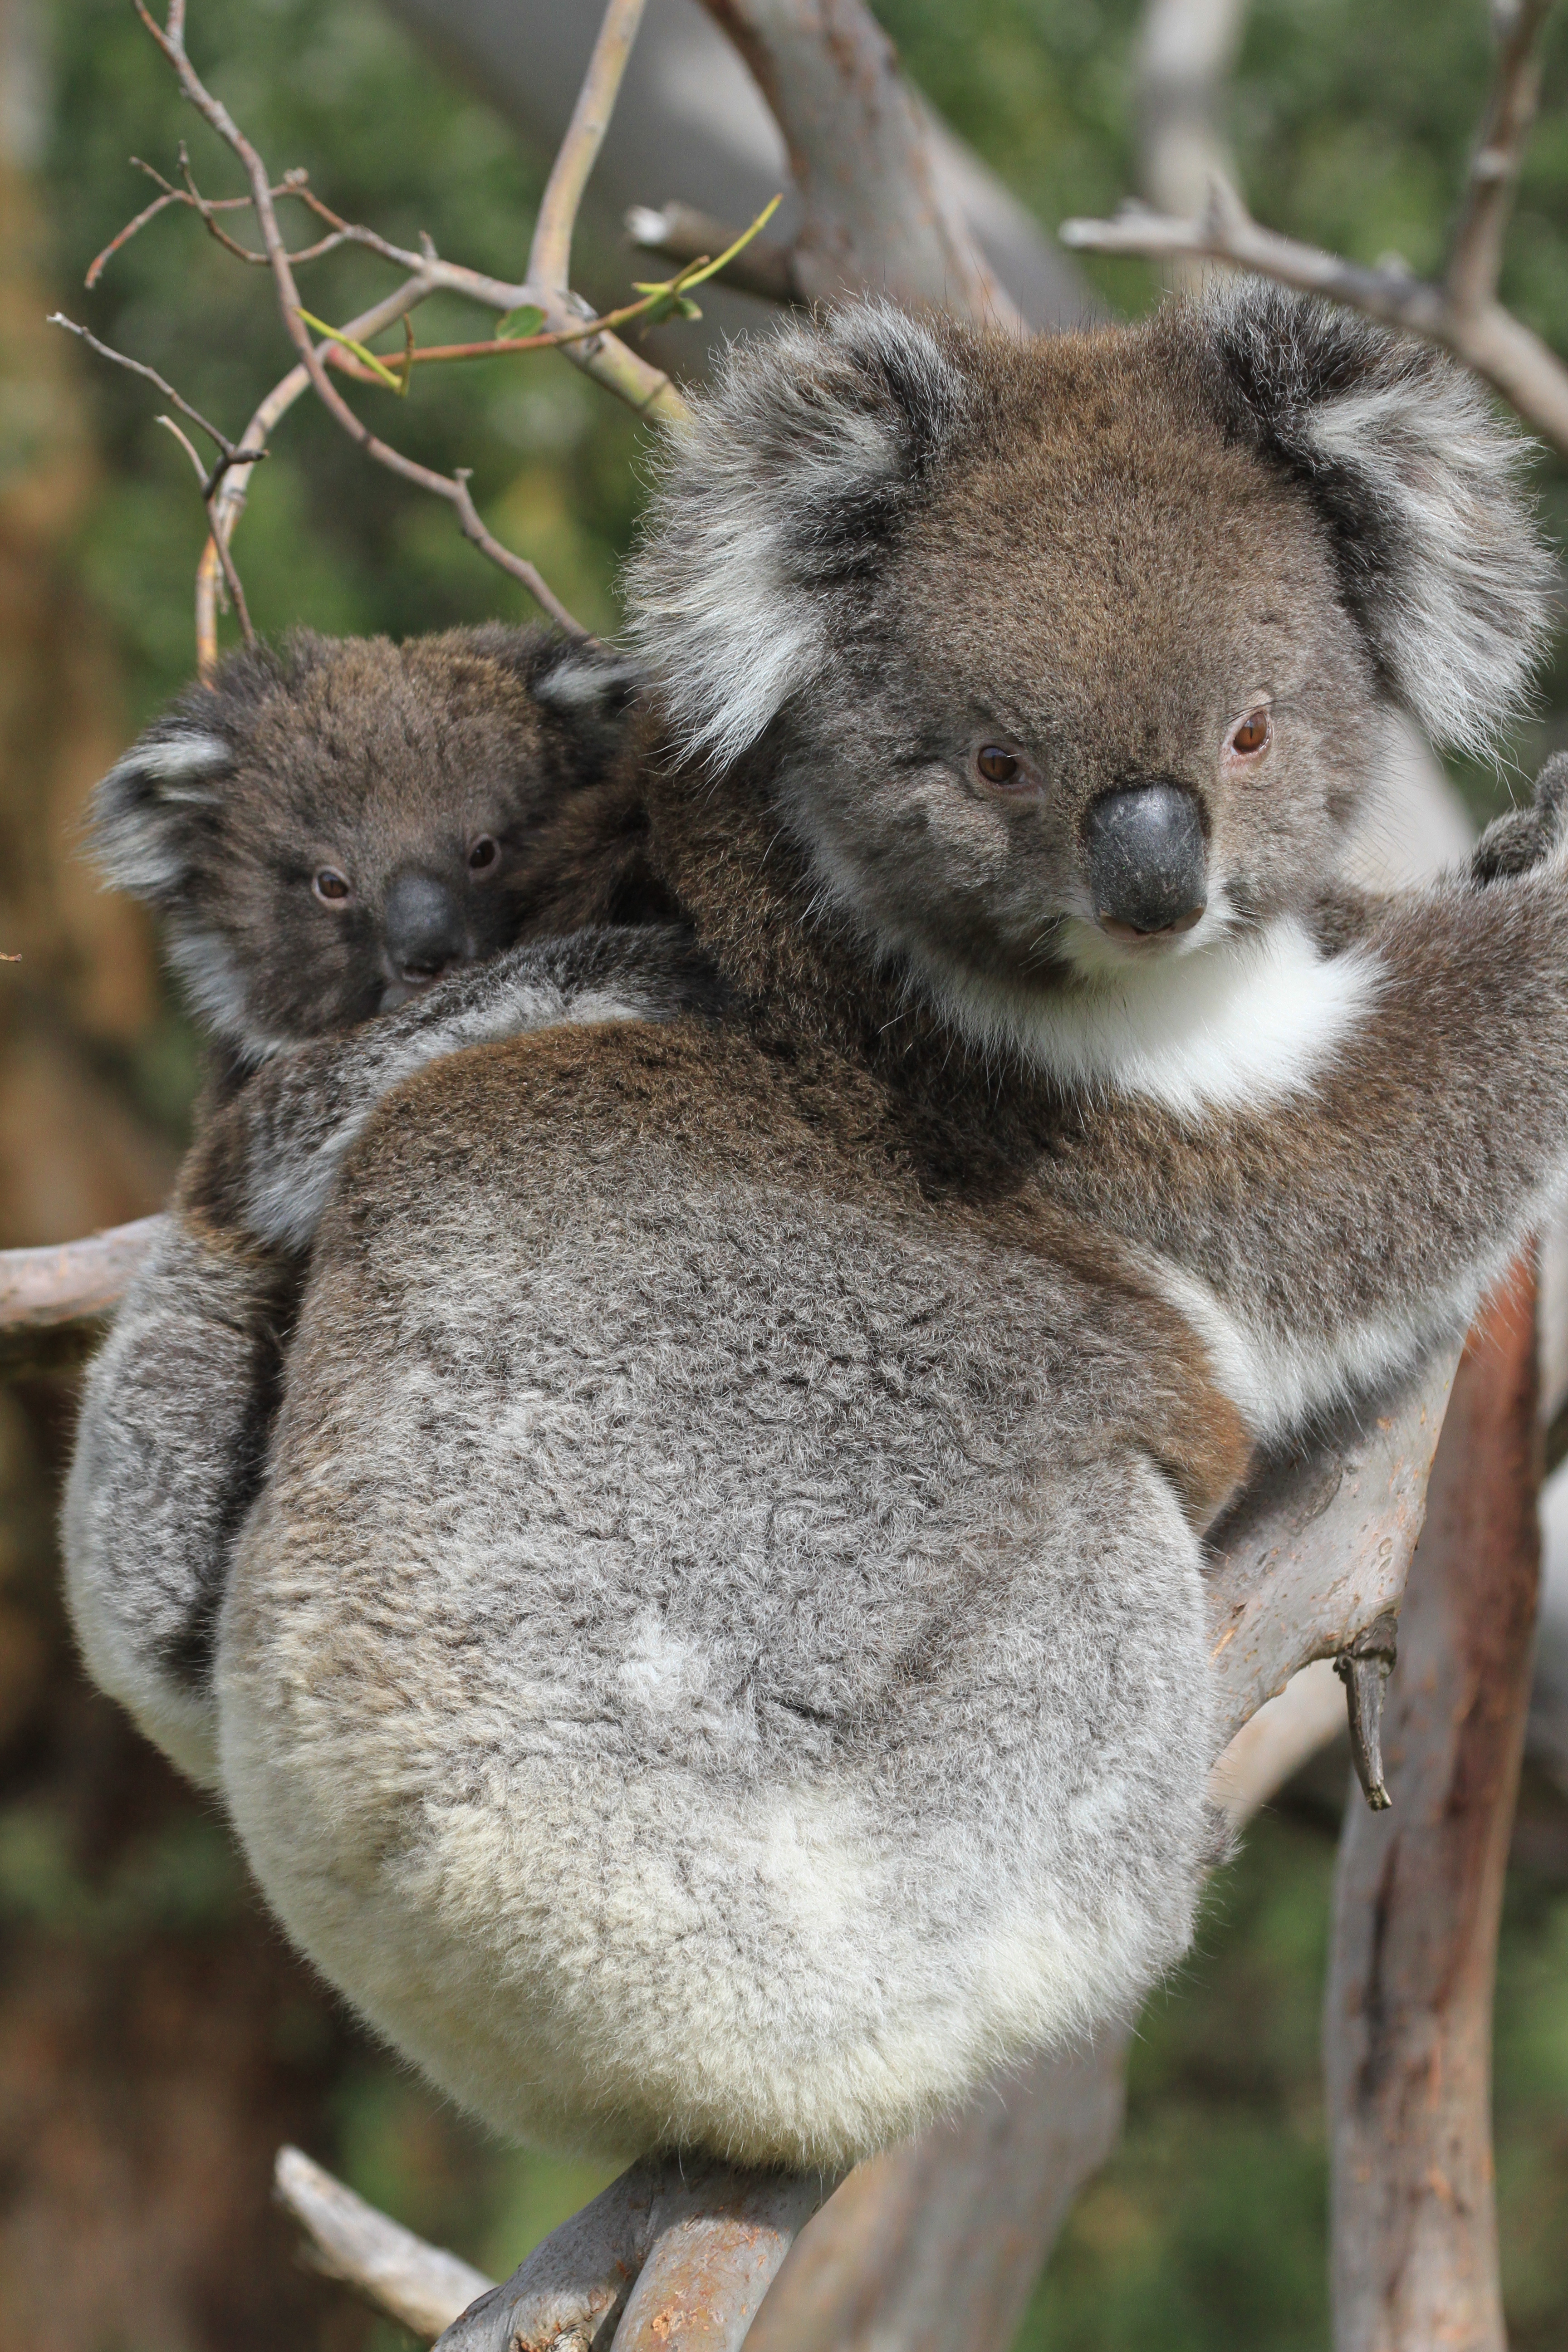 Muchas madres desearían convertirse en koalas para dormir 20 horas al día... (Photo credit: Doclights GmbH / Thoralf Grospitz &amp; Jens Westphalen)